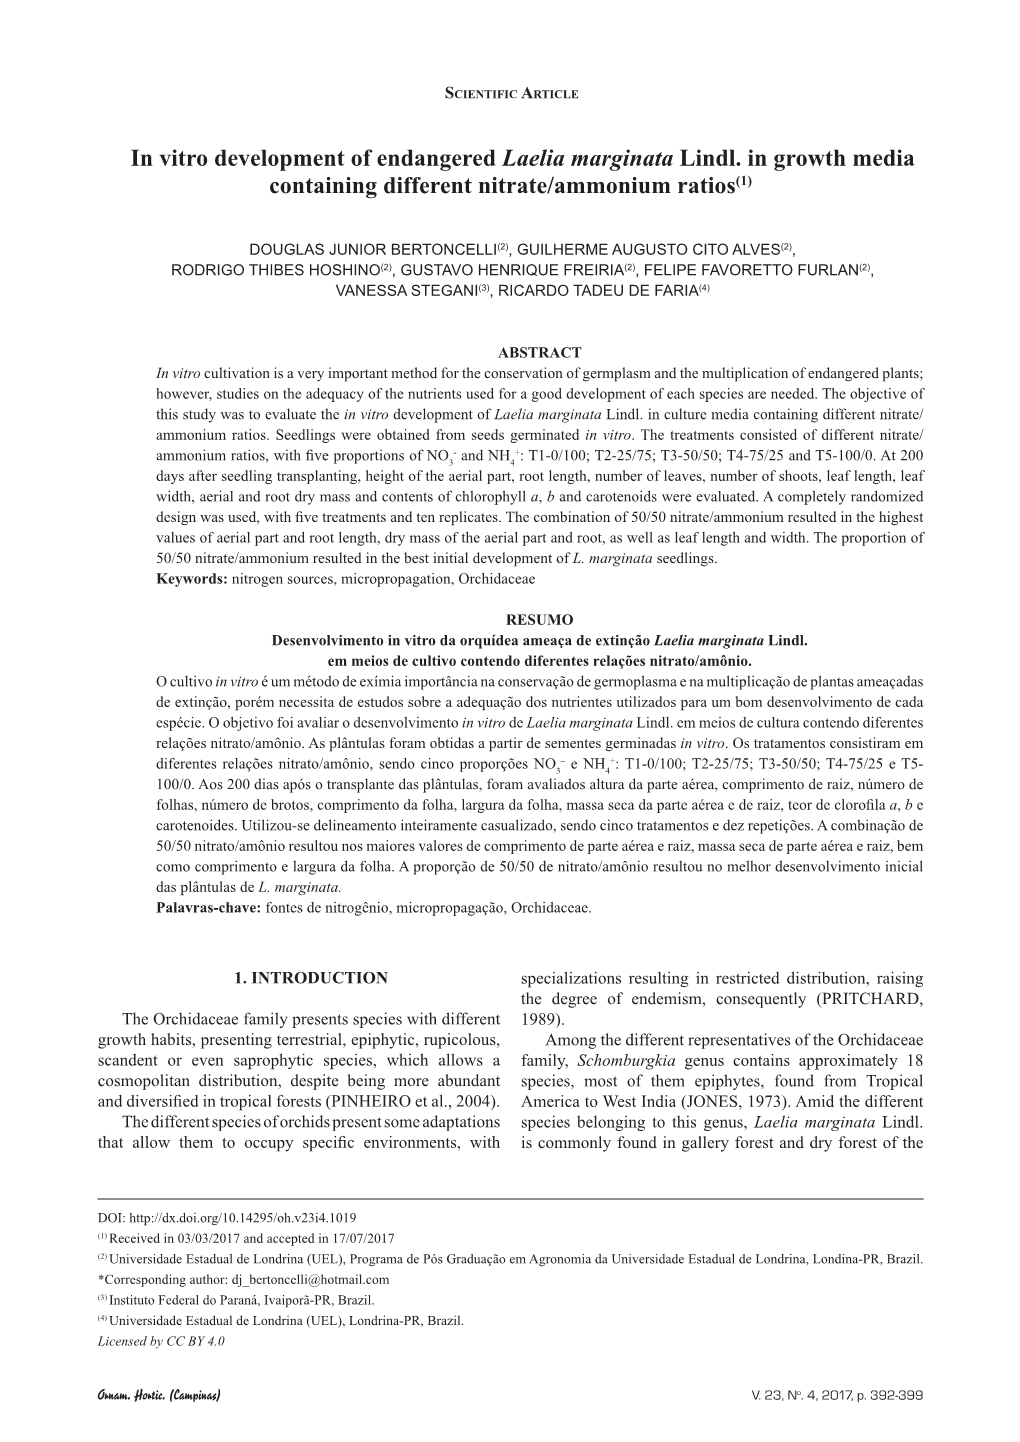 In Vitro Development of Endangered Laelia Marginata Lindl. in Growth Media Containing Different Nitrate/Ammonium Ratios(1)